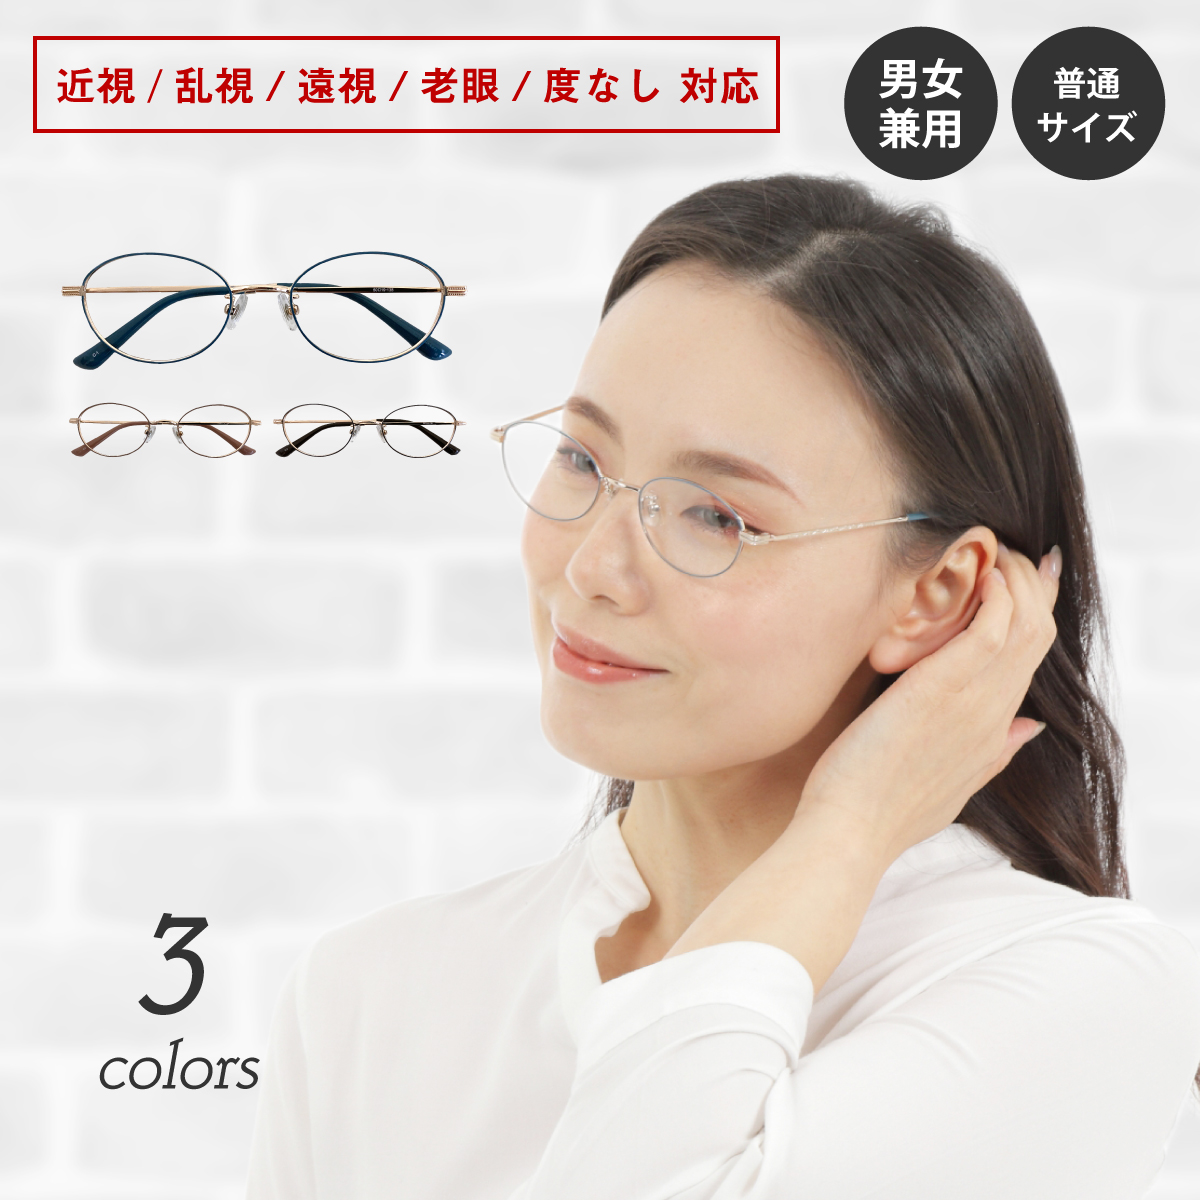 購入安いルイ.フェロー メガネフレーム サイズ51 オールチタン おすすめ 人気 とても綺麗 日本製 軽量 セル、プラスチックフレーム